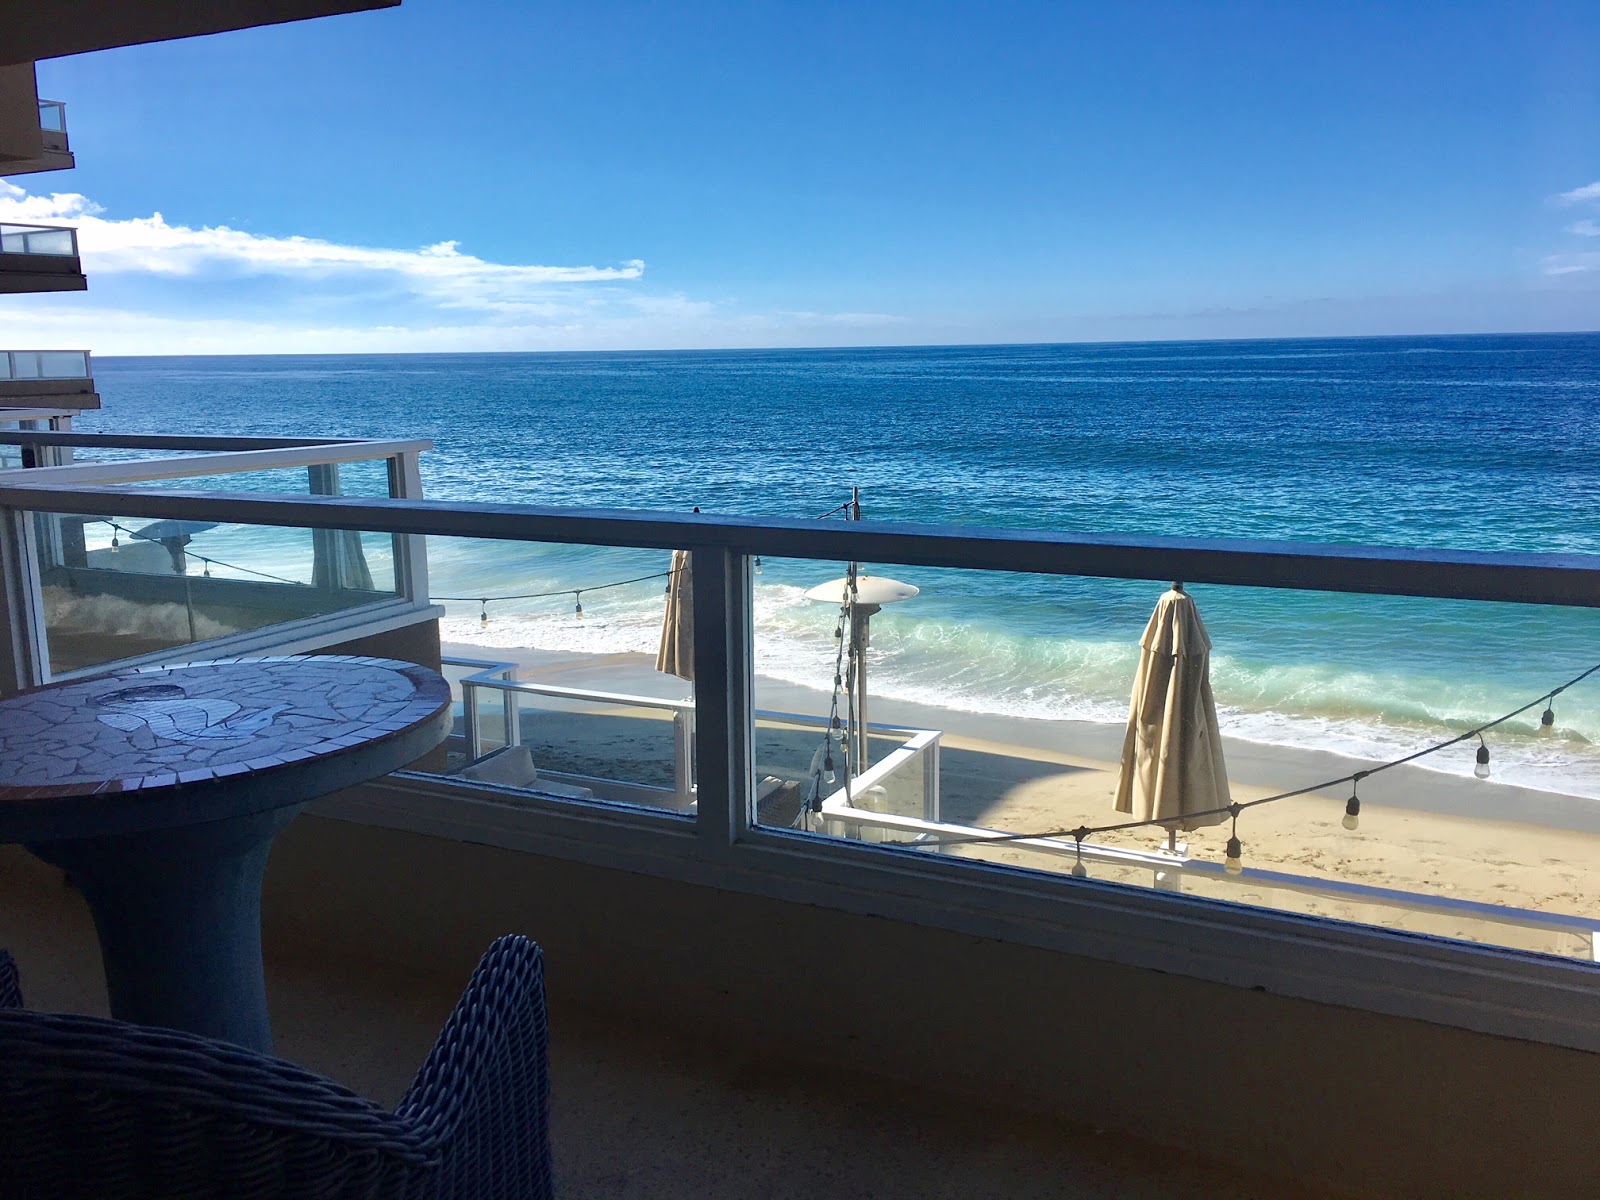 Laguna Beach Hotels - Pacific Edge Hotel Review